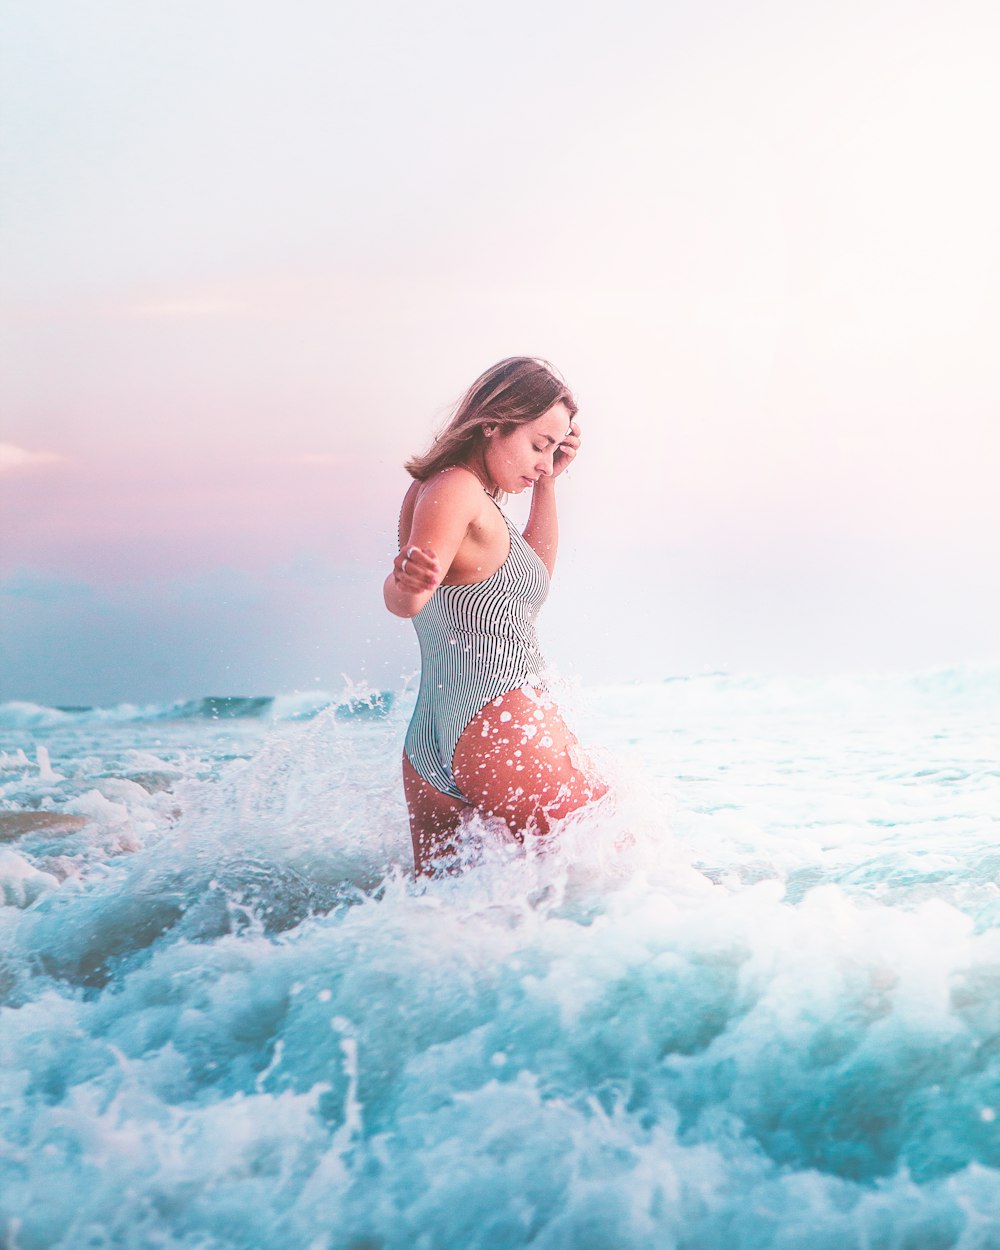 donna in bikini a pois bianco e nero in piedi sulle onde del mare durante il giorno